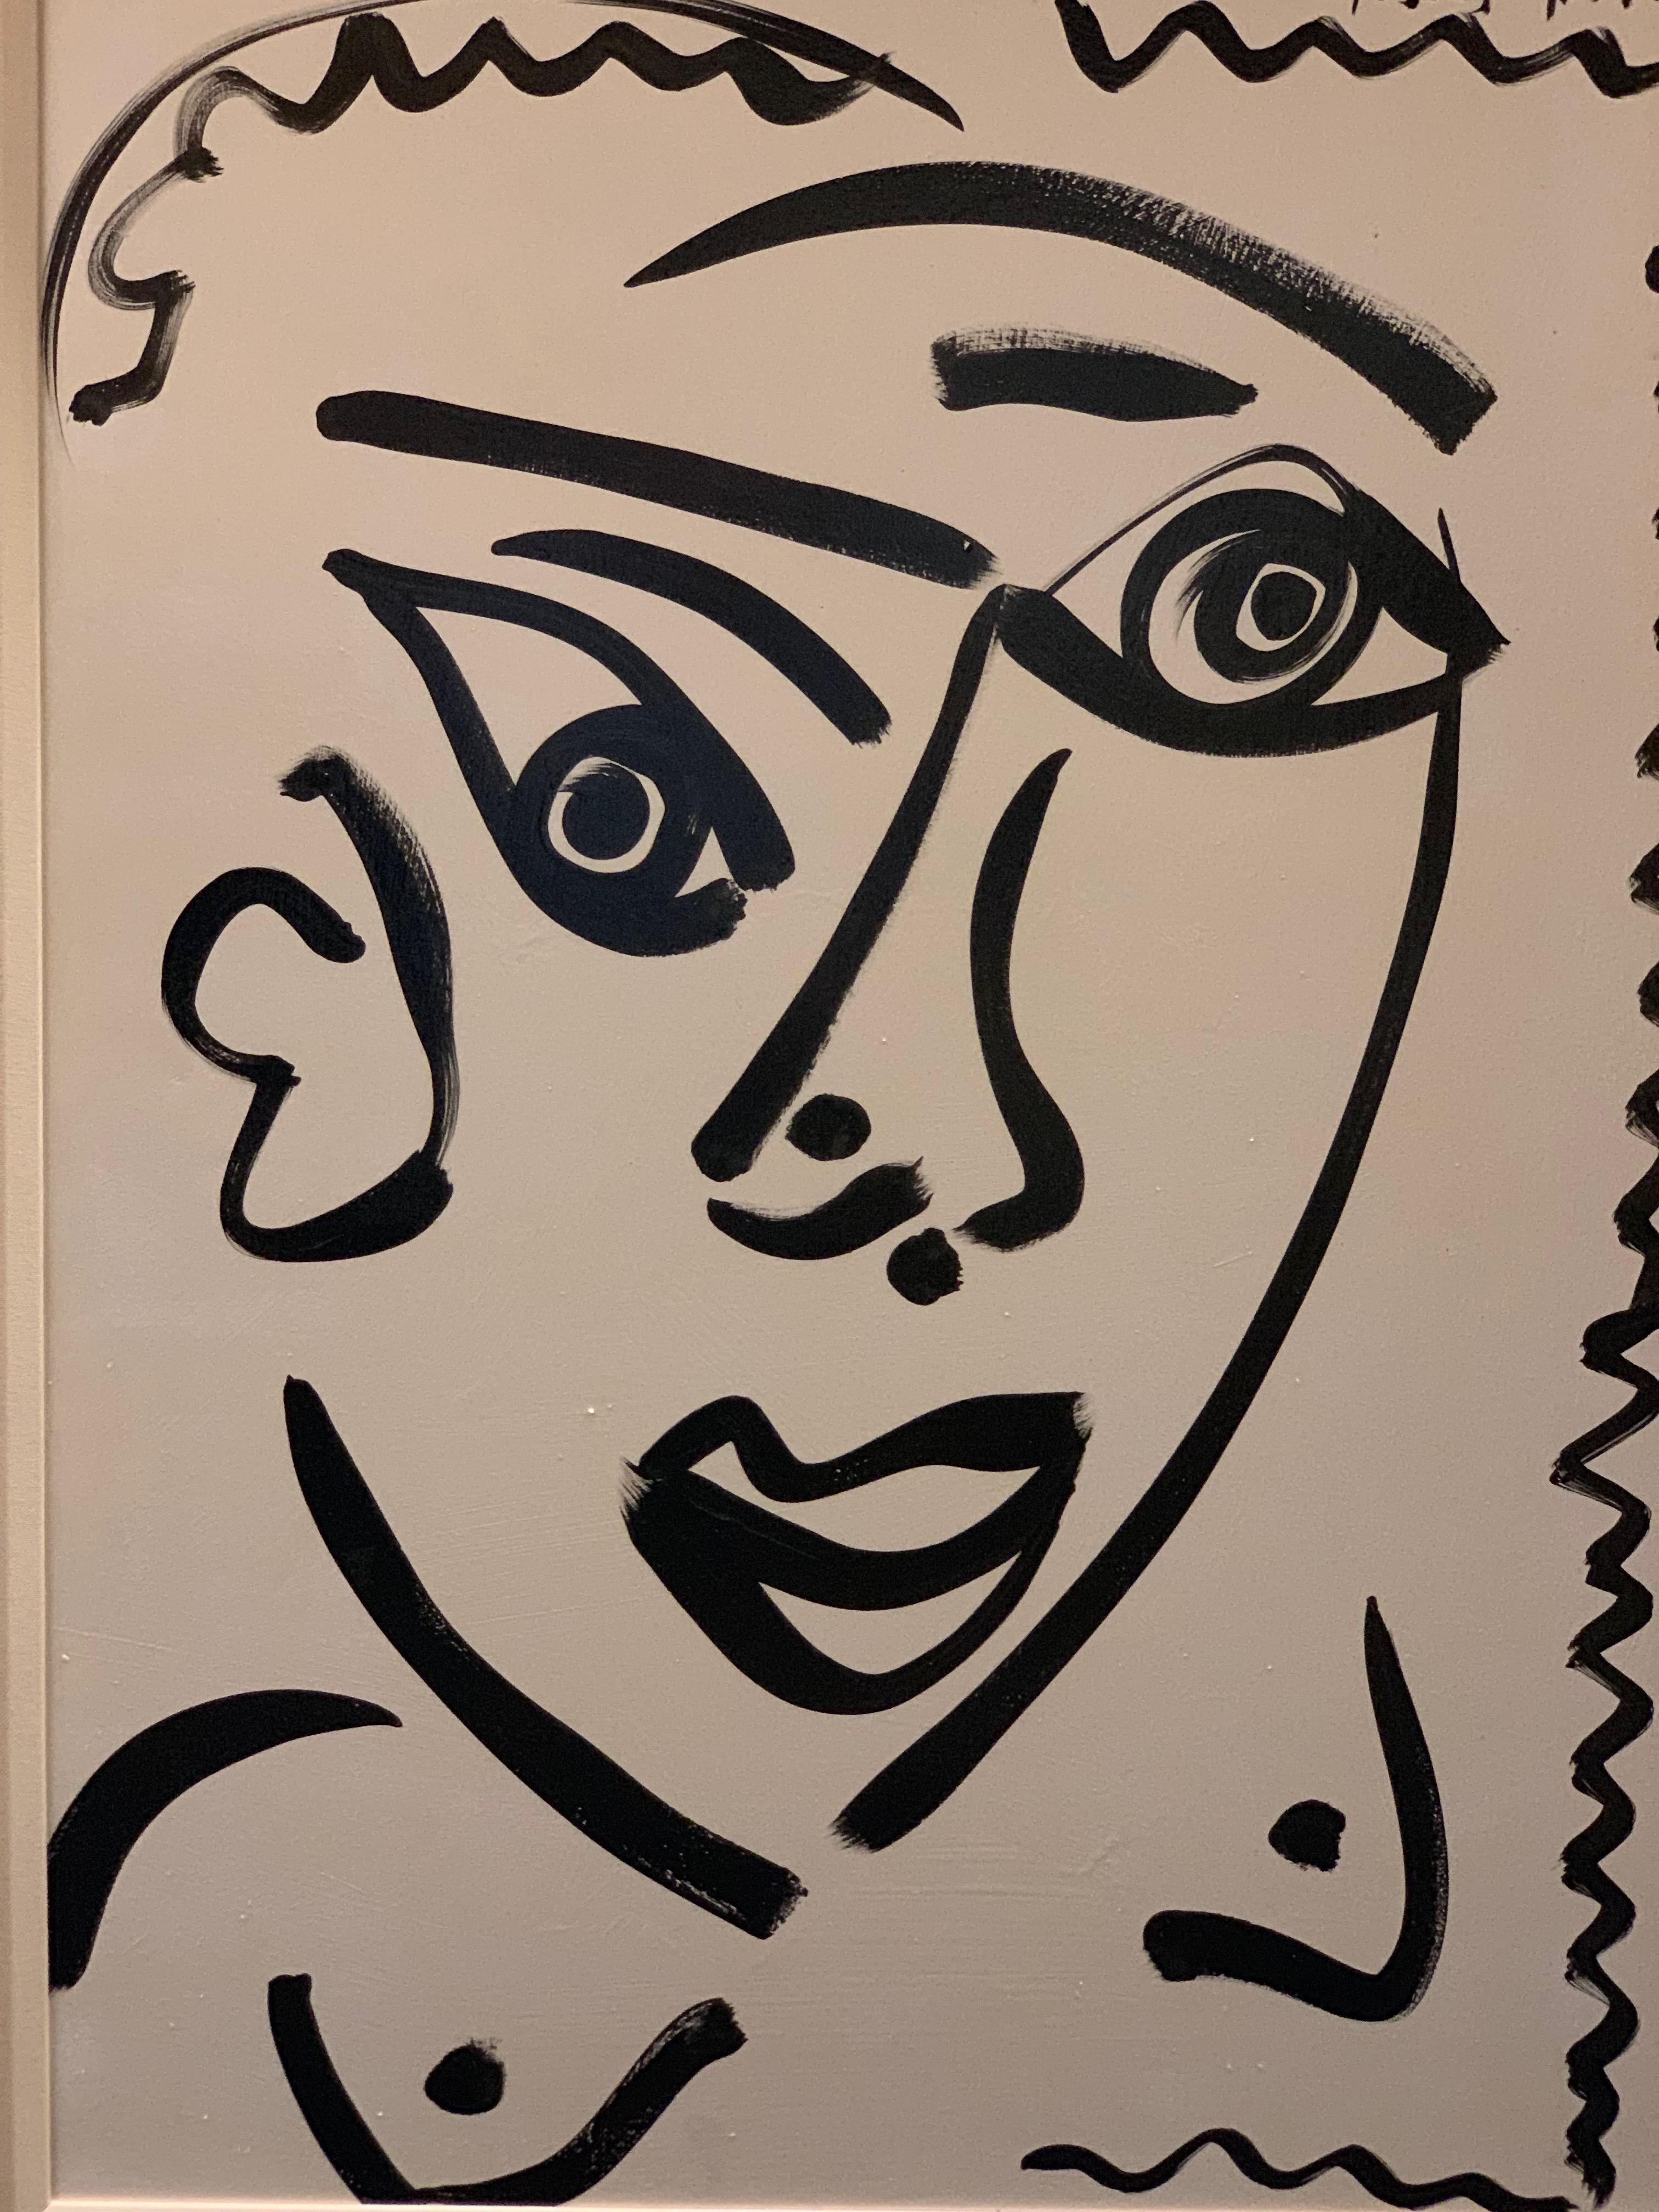 Portrait expressionniste encadré à l'huile sur carton, créé en 1973 par Peter Robert Keil dans son atelier de la rue de Turenne, près de la place de la Bastille à Paris. Signé et daté au recto et signé et inscrit au verso. La pièce est en excellent